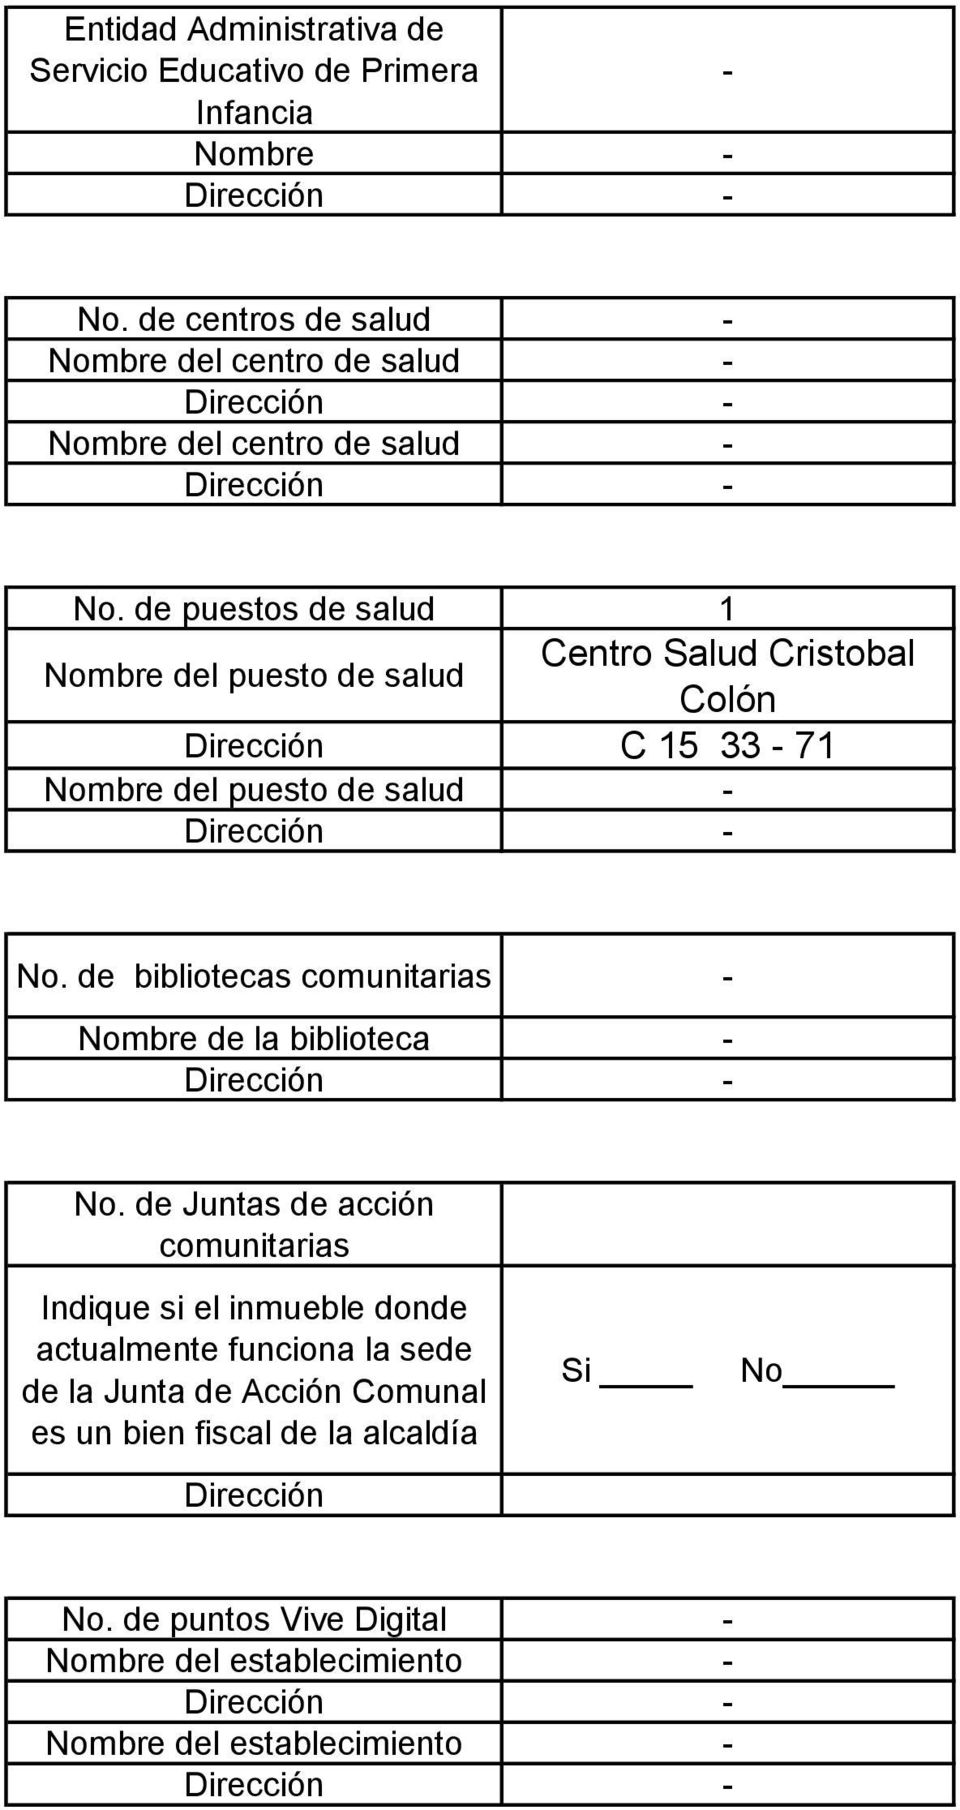 de puestos de salud 1 Nombre del puesto de salud Centro Salud Cristobal Colón Dirección C 15 33-71 Nombre del puesto de salud - No.